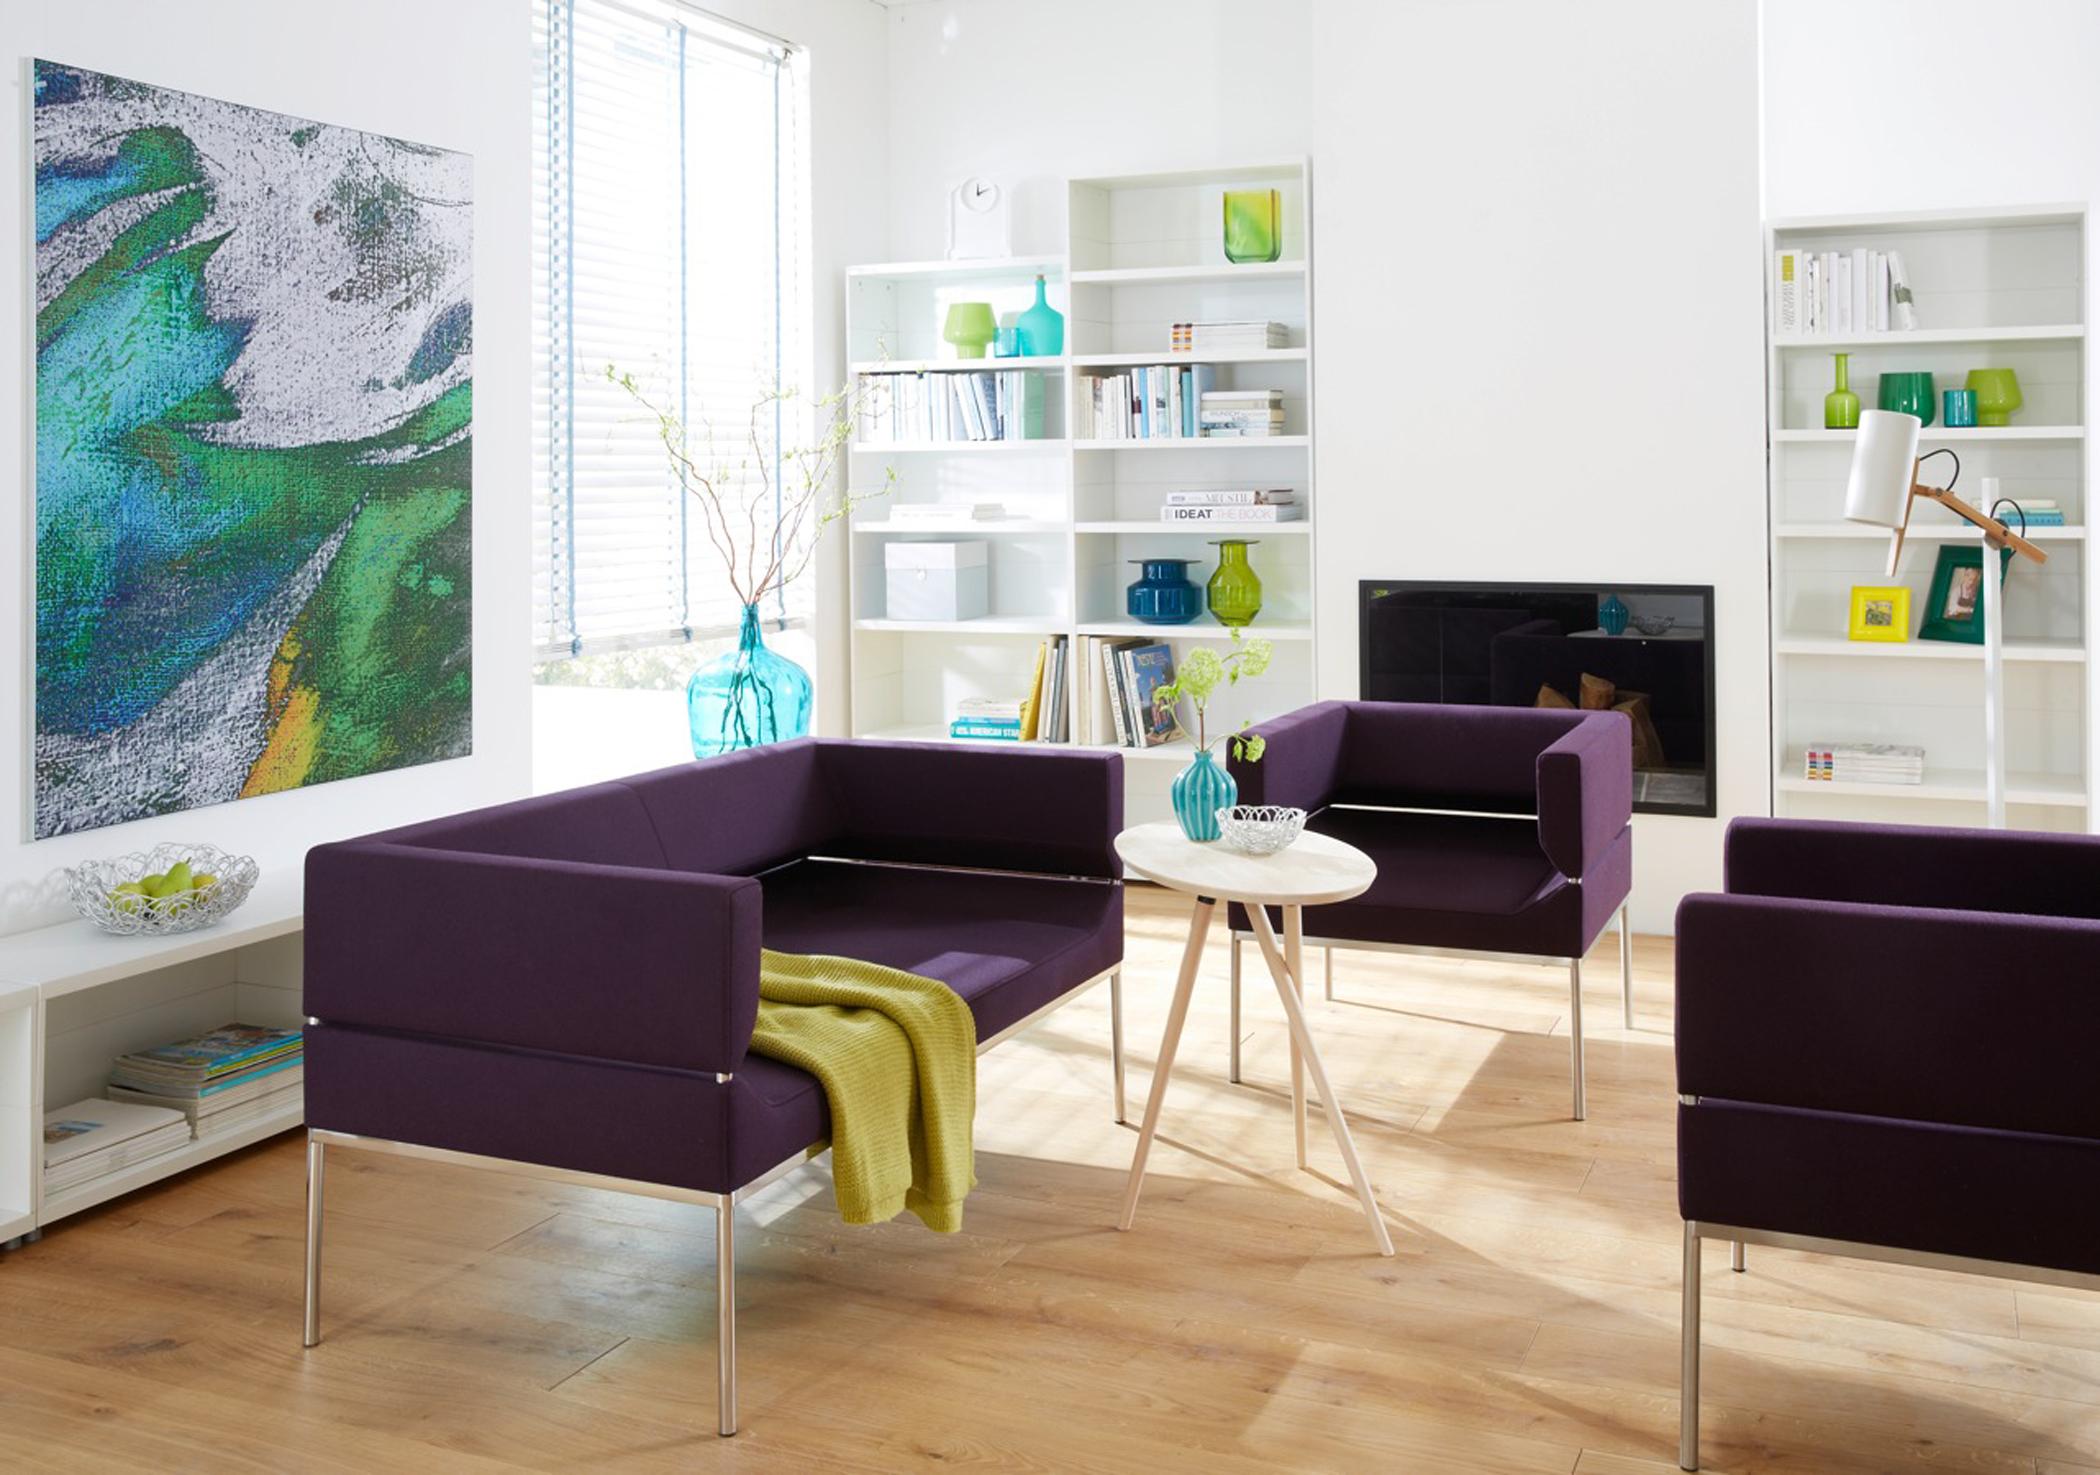 Sitzgruppe in Violett #beistelltisch #wandfarbe #bücherregal #kamin #vase #sessel #sofa #türkisfarbenedeko #grünevase ©KFF